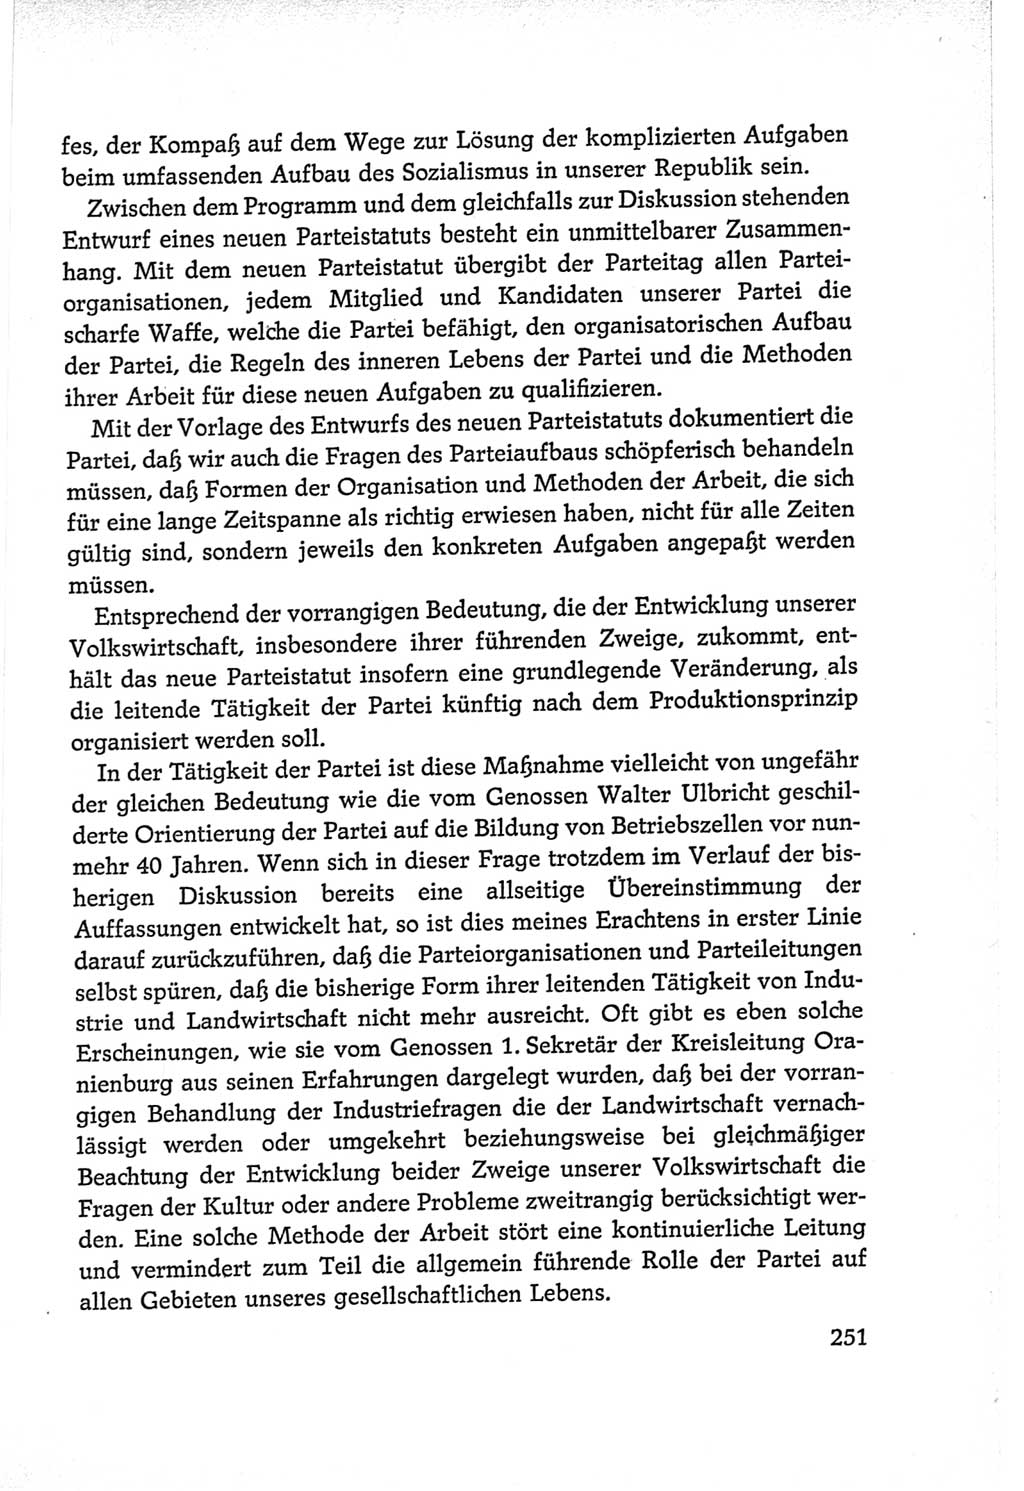 Protokoll der Verhandlungen des Ⅵ. Parteitages der Sozialistischen Einheitspartei Deutschlands (SED) [Deutsche Demokratische Republik (DDR)] 1963, Band Ⅱ, Seite 251 (Prot. Verh. Ⅵ. PT SED DDR 1963, Bd. Ⅱ, S. 251)